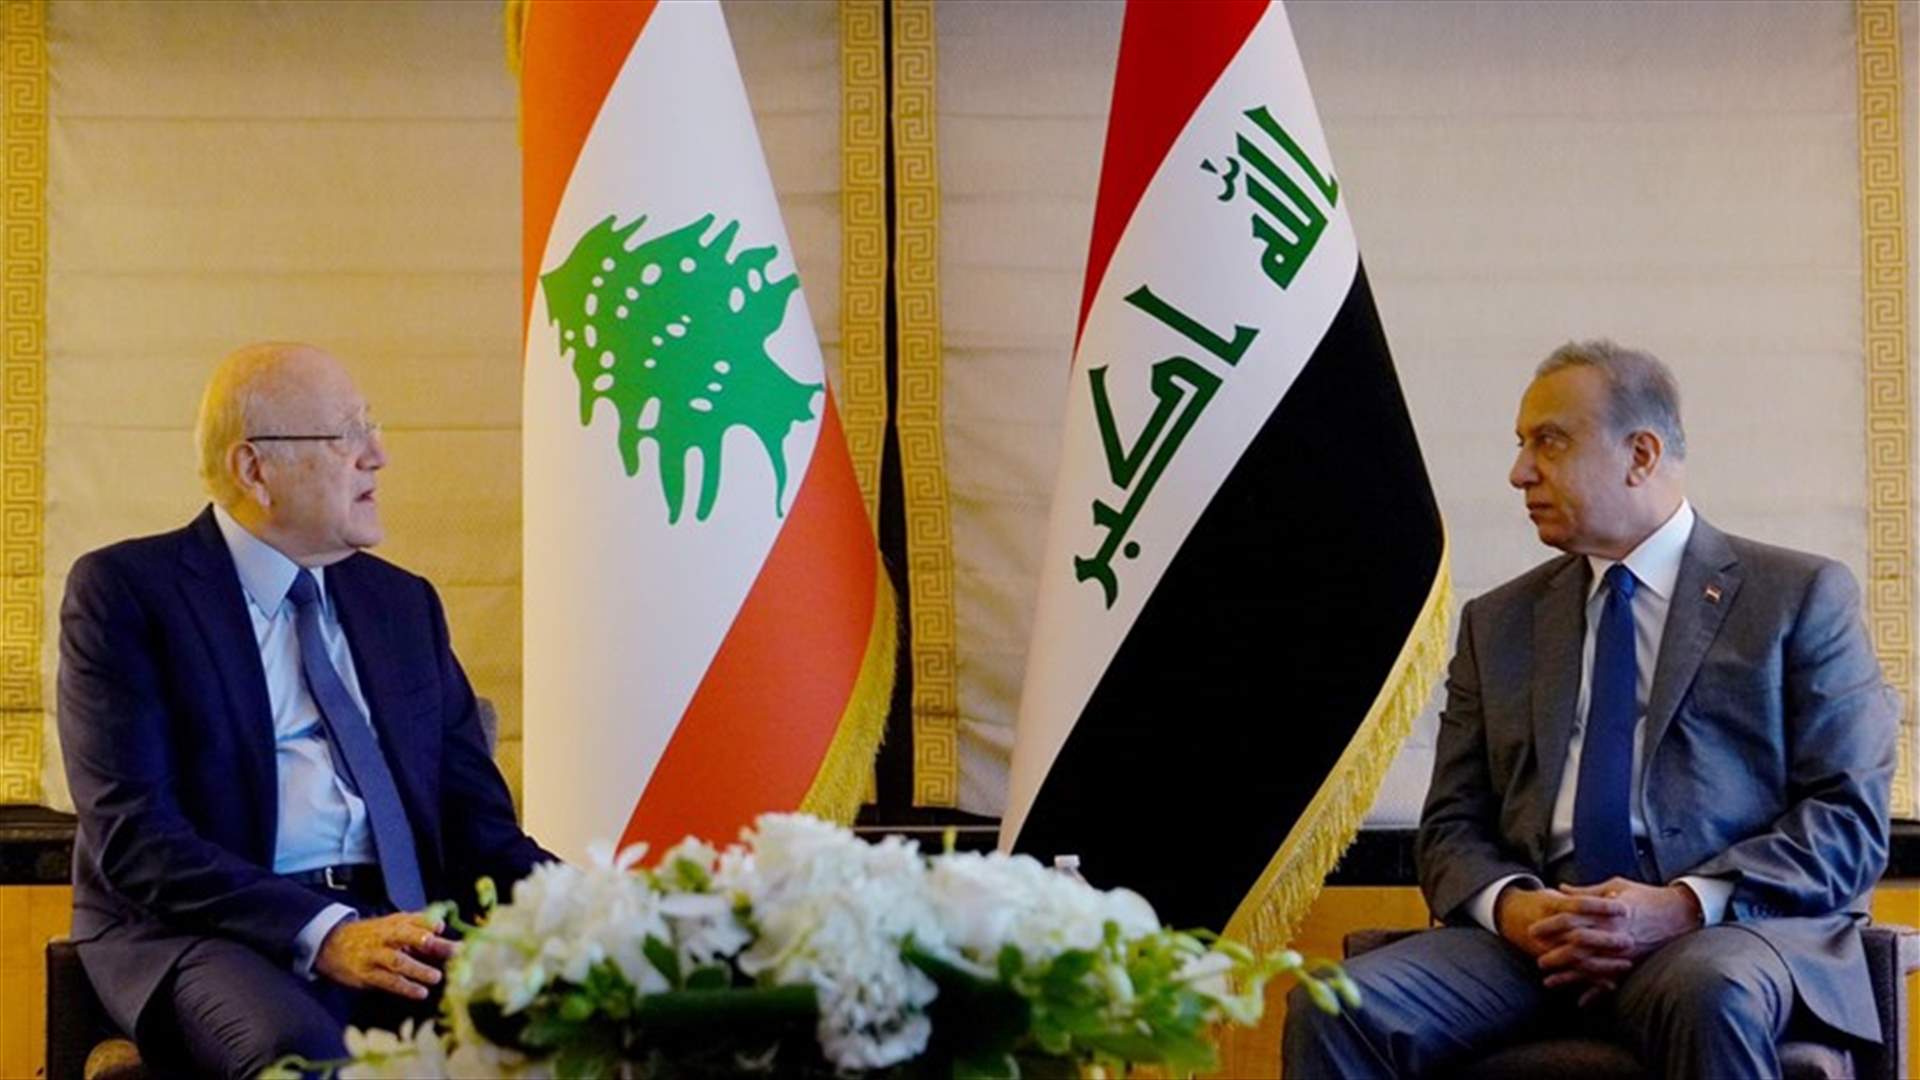 الكاظمي لميقاتي: العراق مستعدة للوقوف الى جانب لبنان في هذه المحنة التي يمر بها